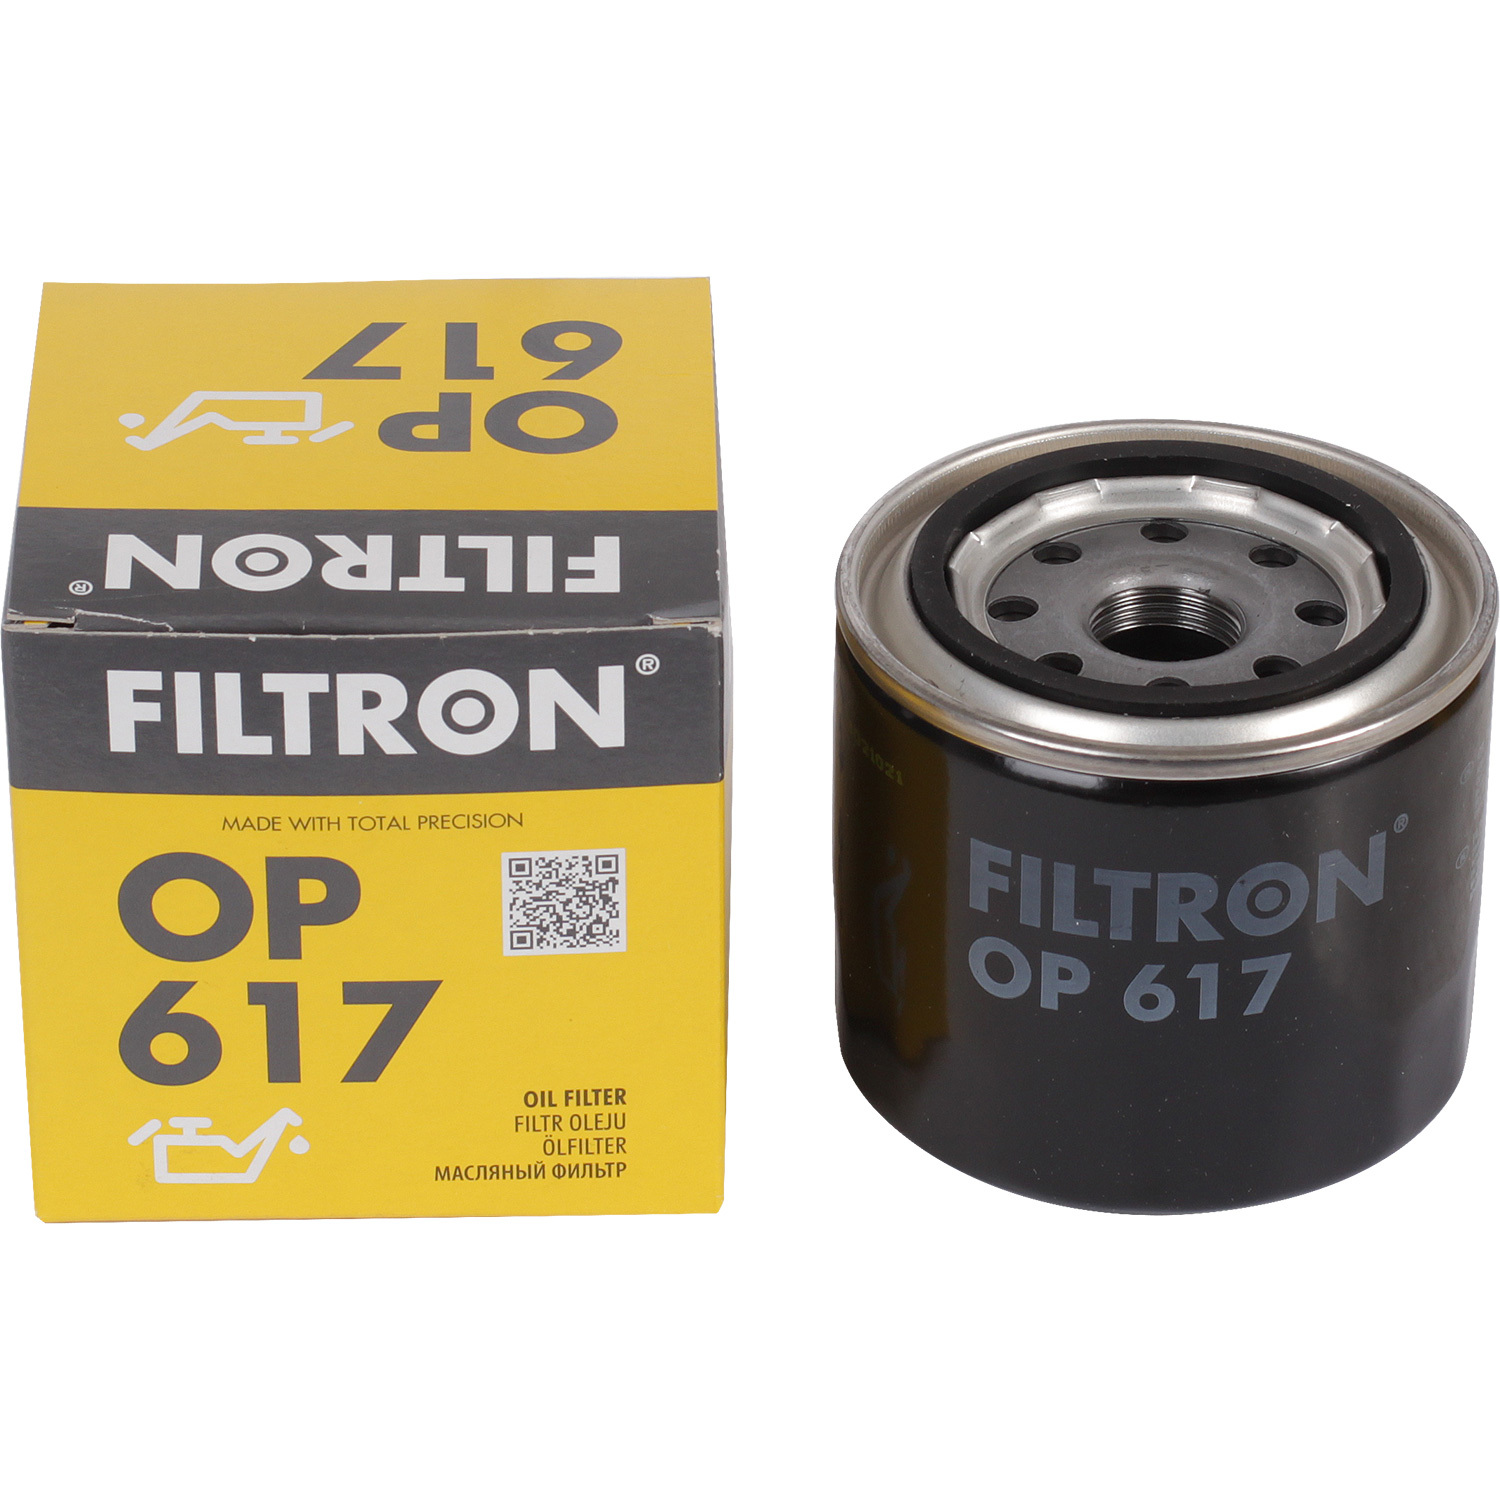 фильтры filtron фильтр масляный filtron op6291 Фильтры Filtron Фильтр масляный Filtron OP617